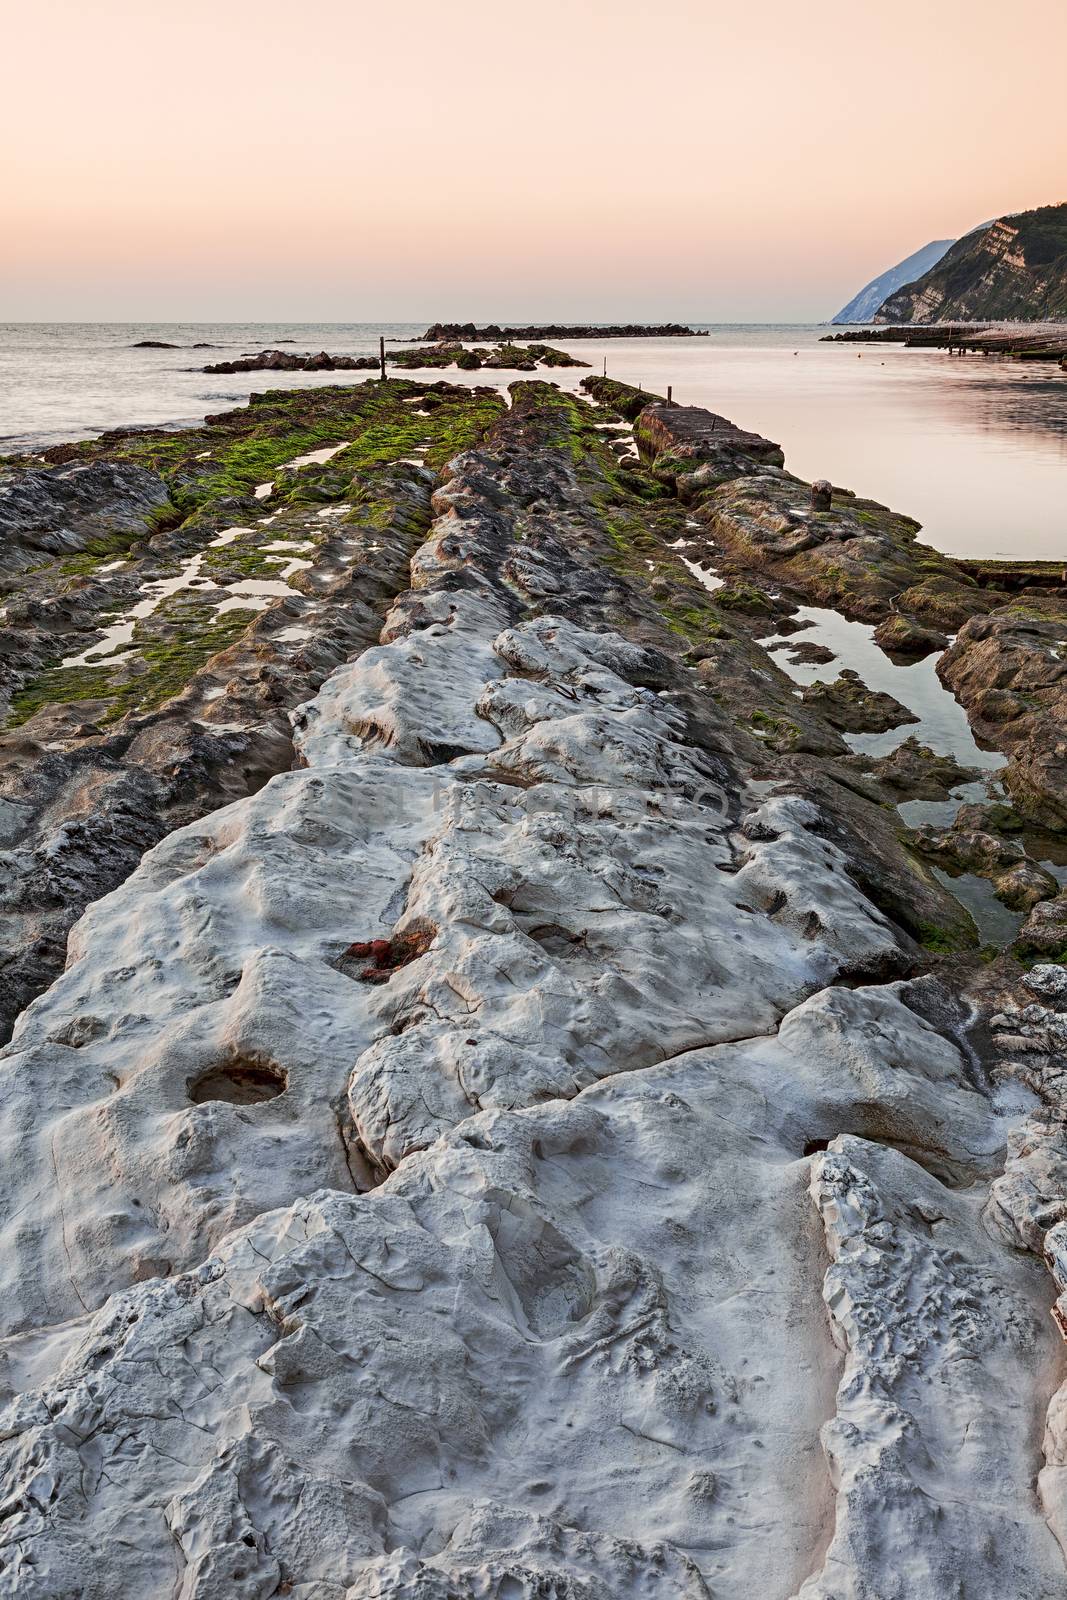 The passetto rocks, Ancona, Italy by LuigiMorbidelli